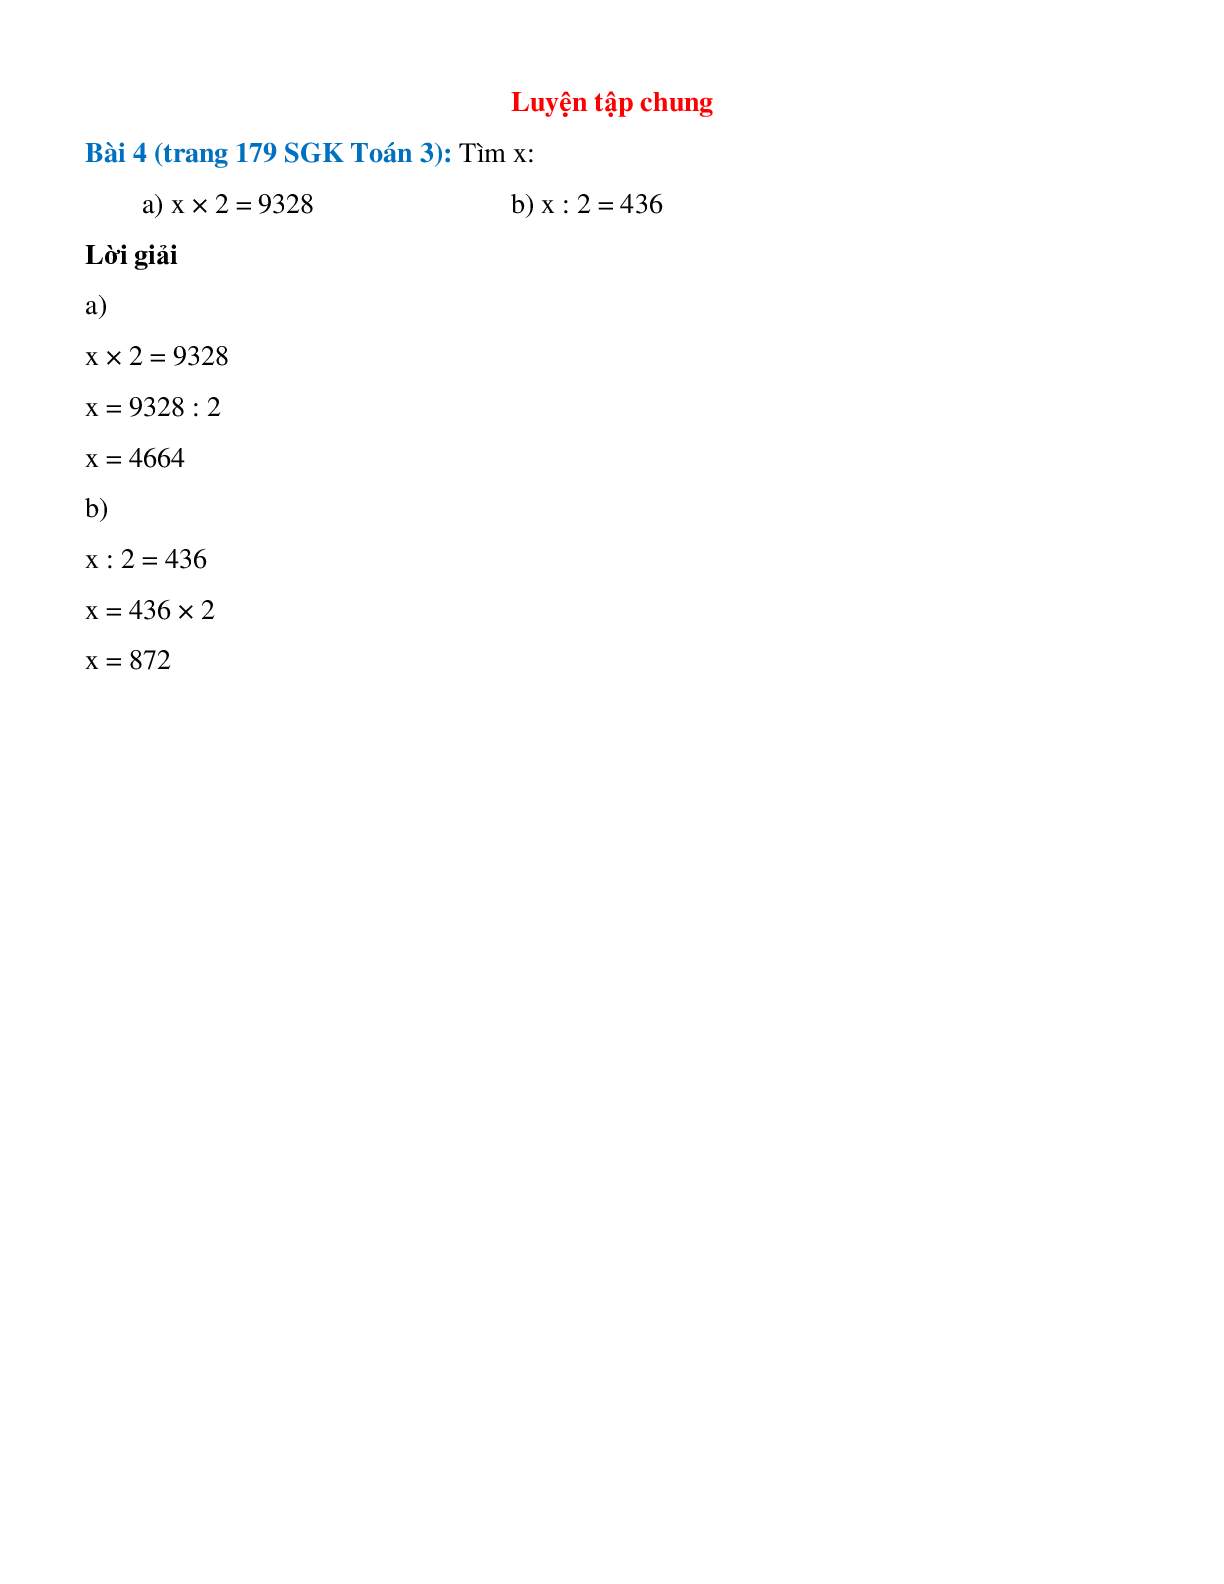 Tìm x: x × 2 = 9328 và x : 2 = 436 (trang 1)